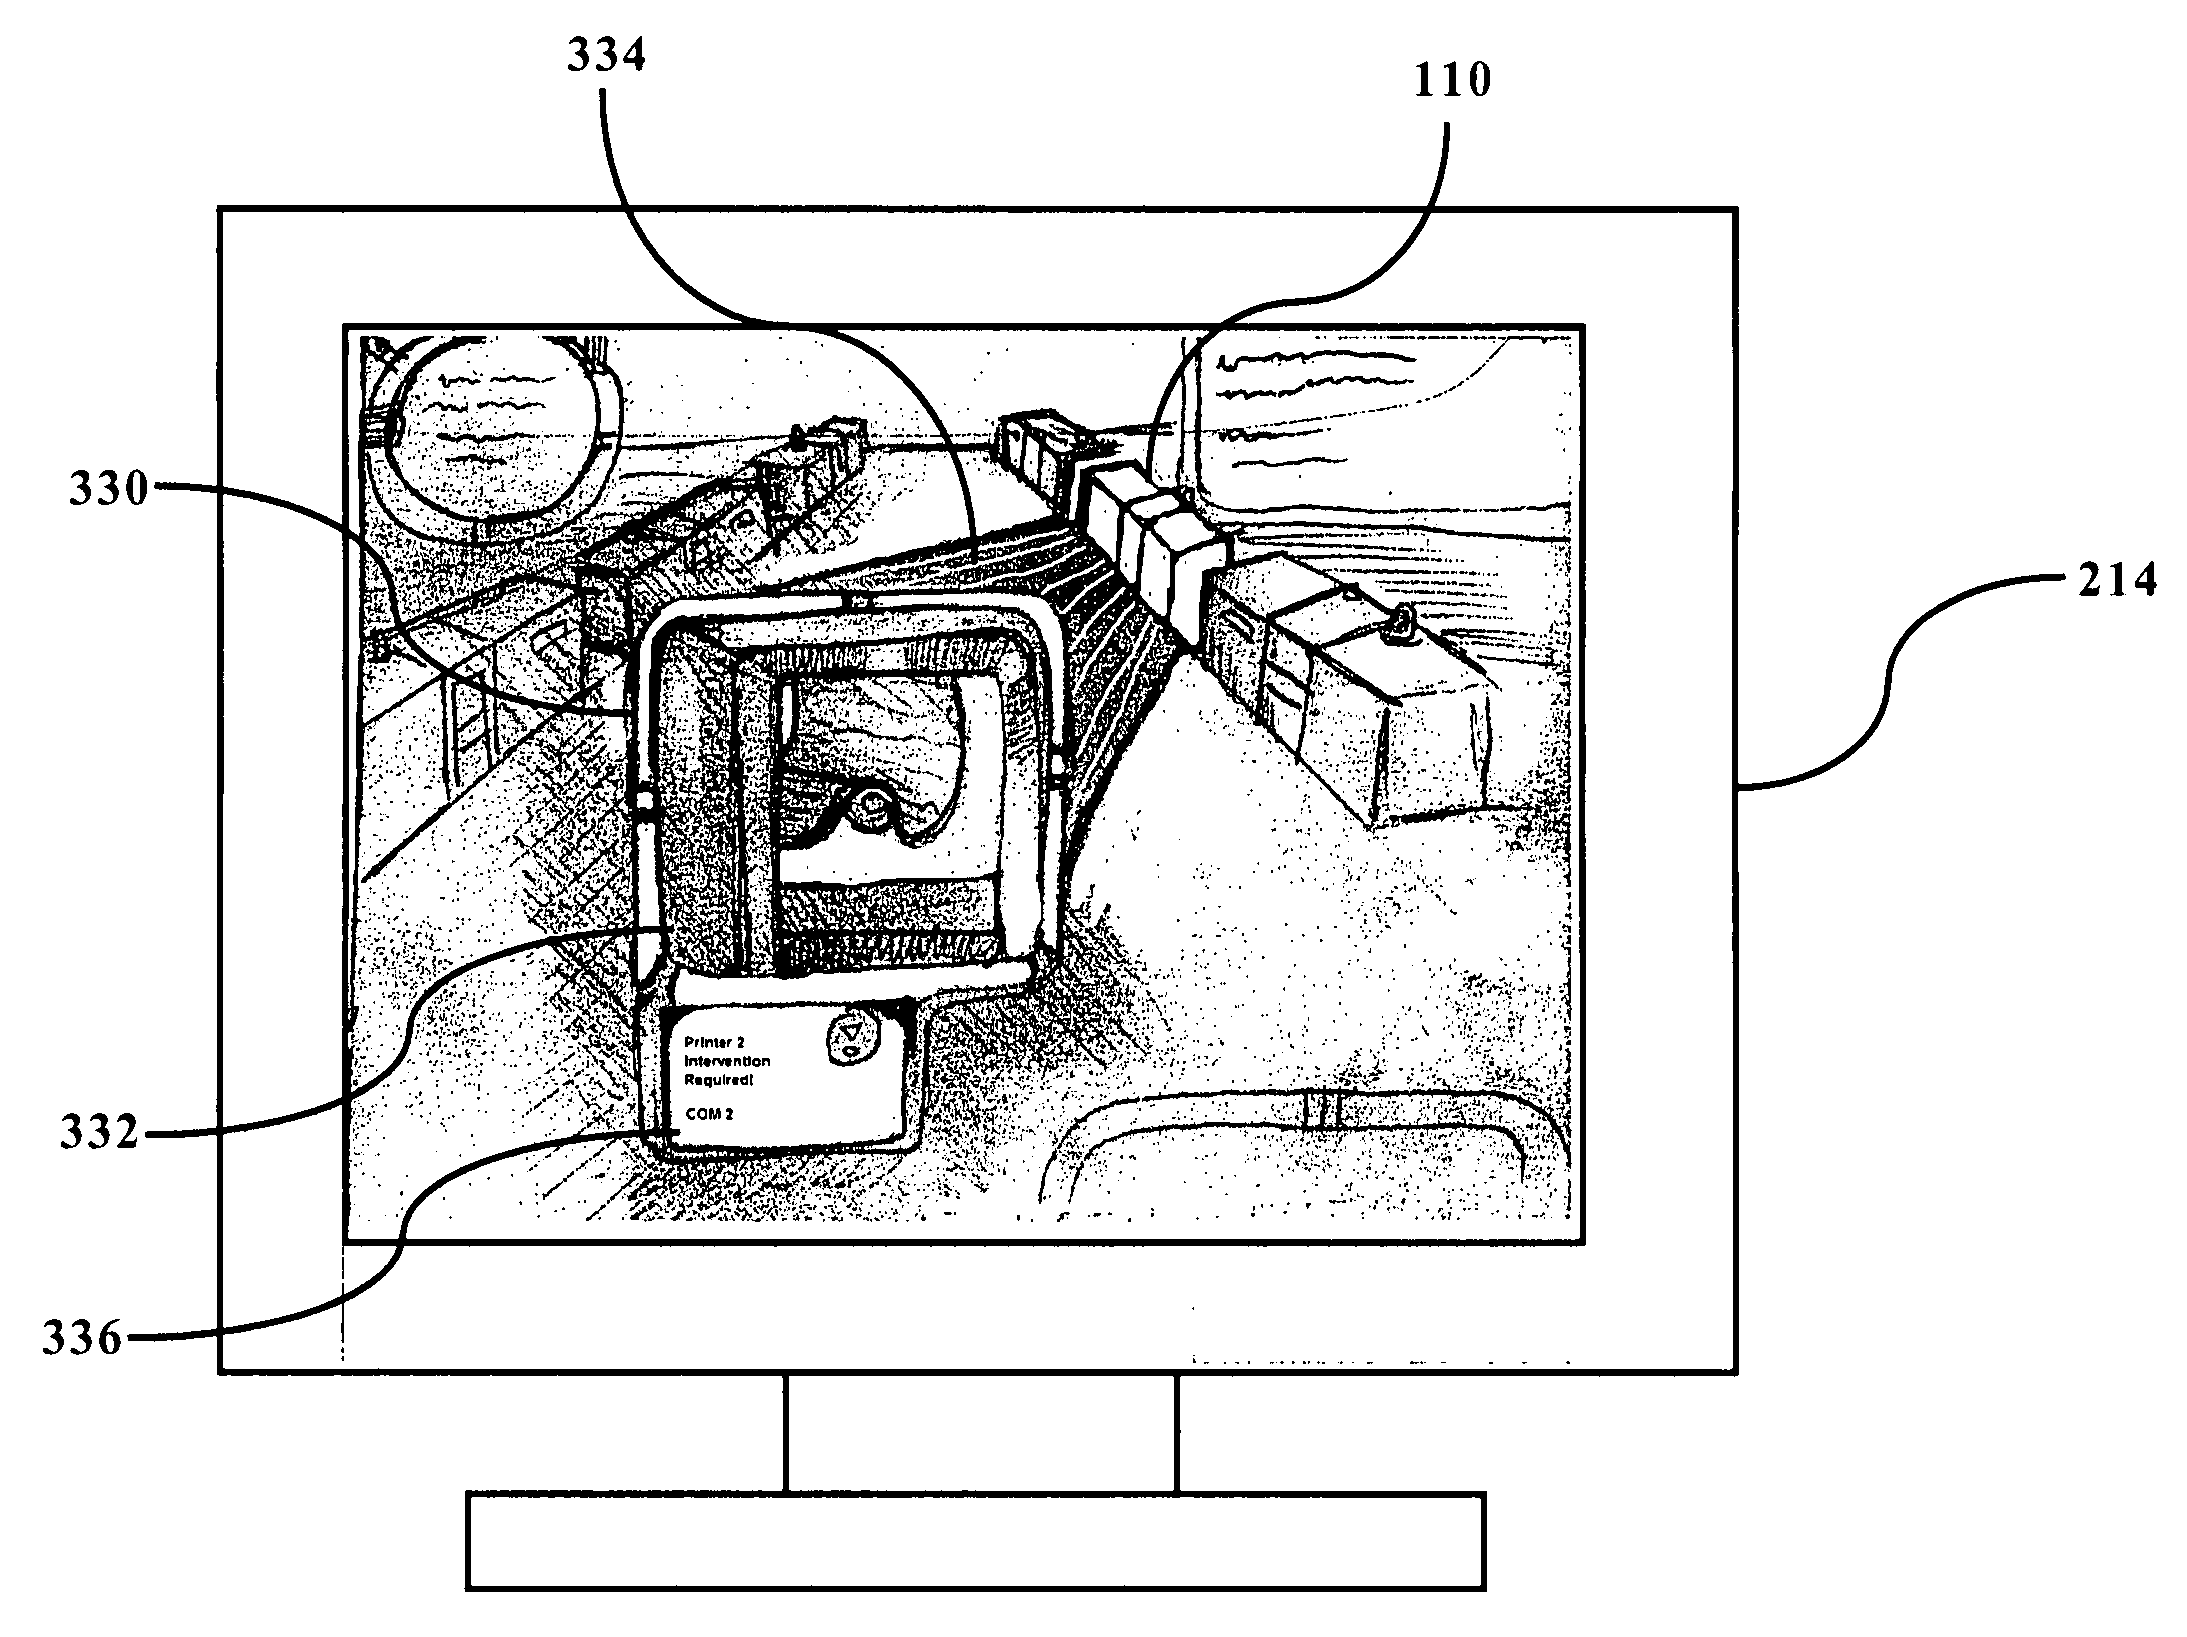 Image-based printer system monitoring